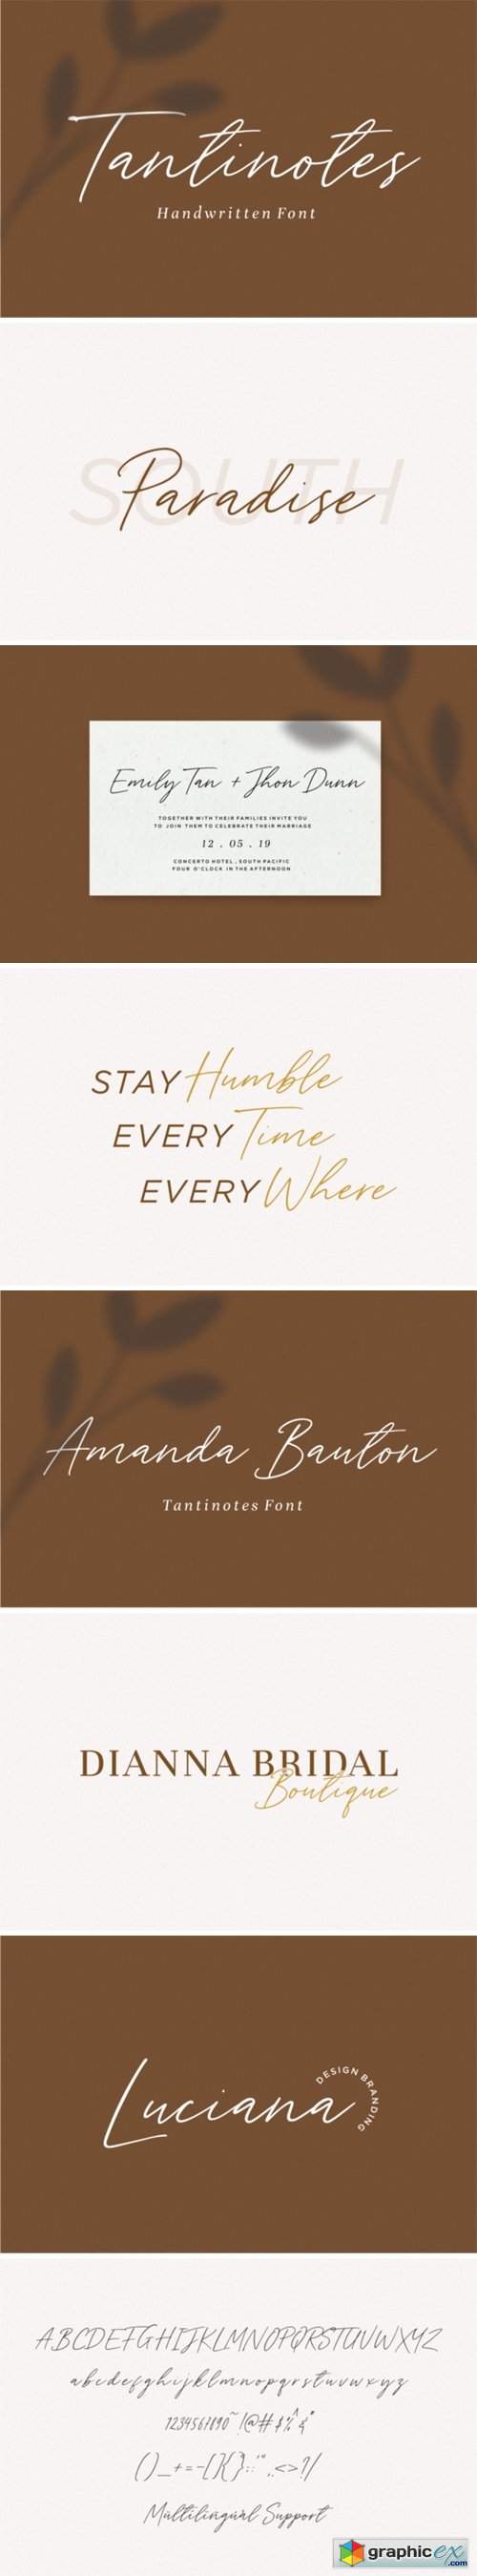 Tantinotes - Handwritten Font